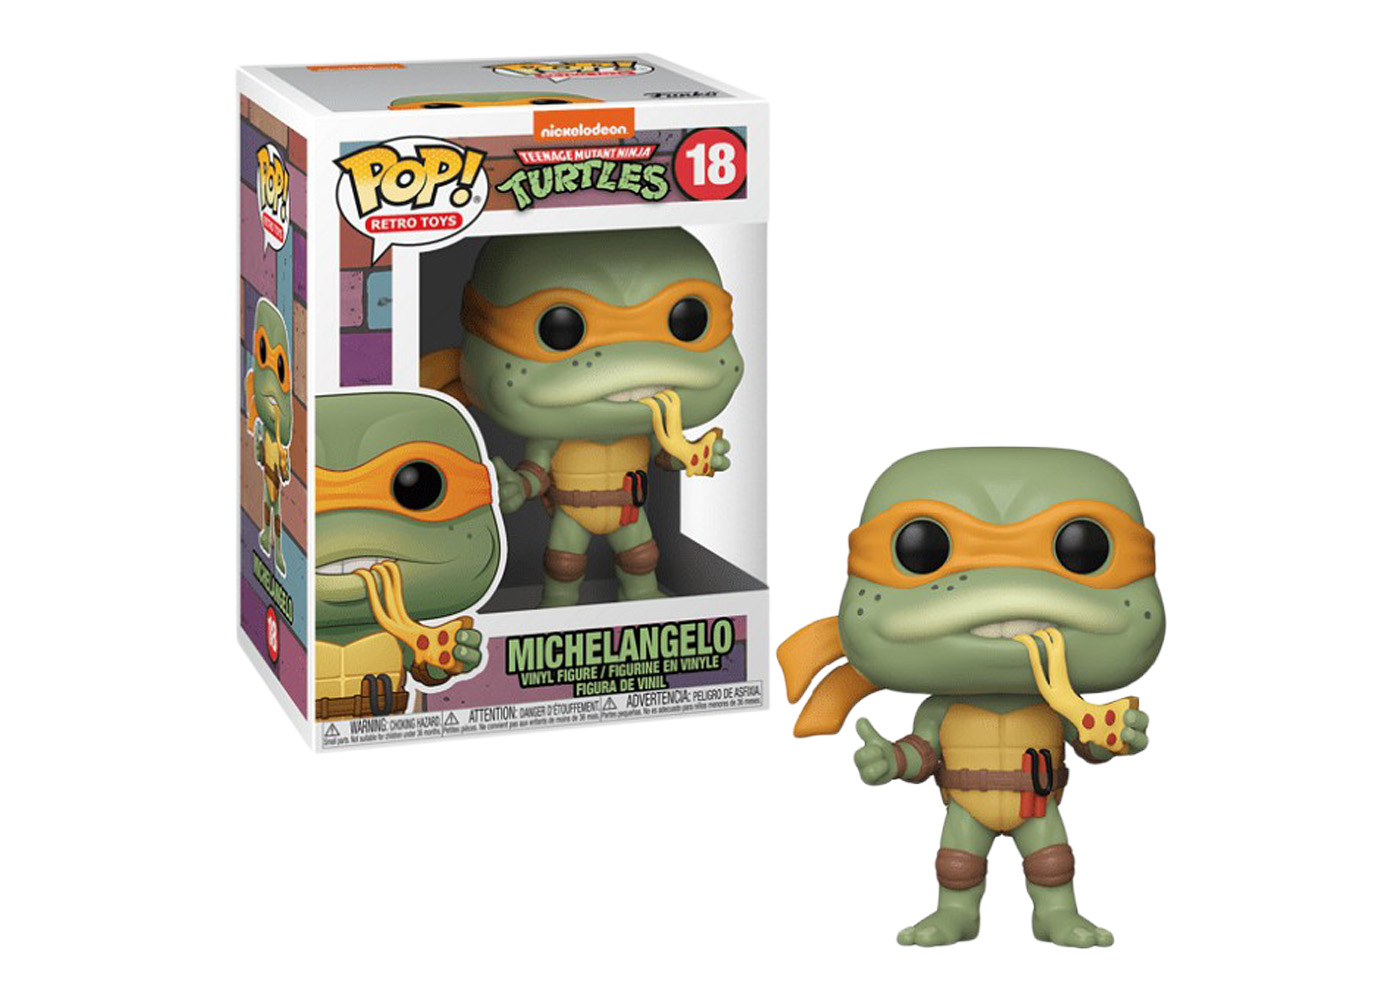 TMNT Michelangelo Teenage Mutant Ninja Turtles POP Retro Toys #18 Figur Funko 